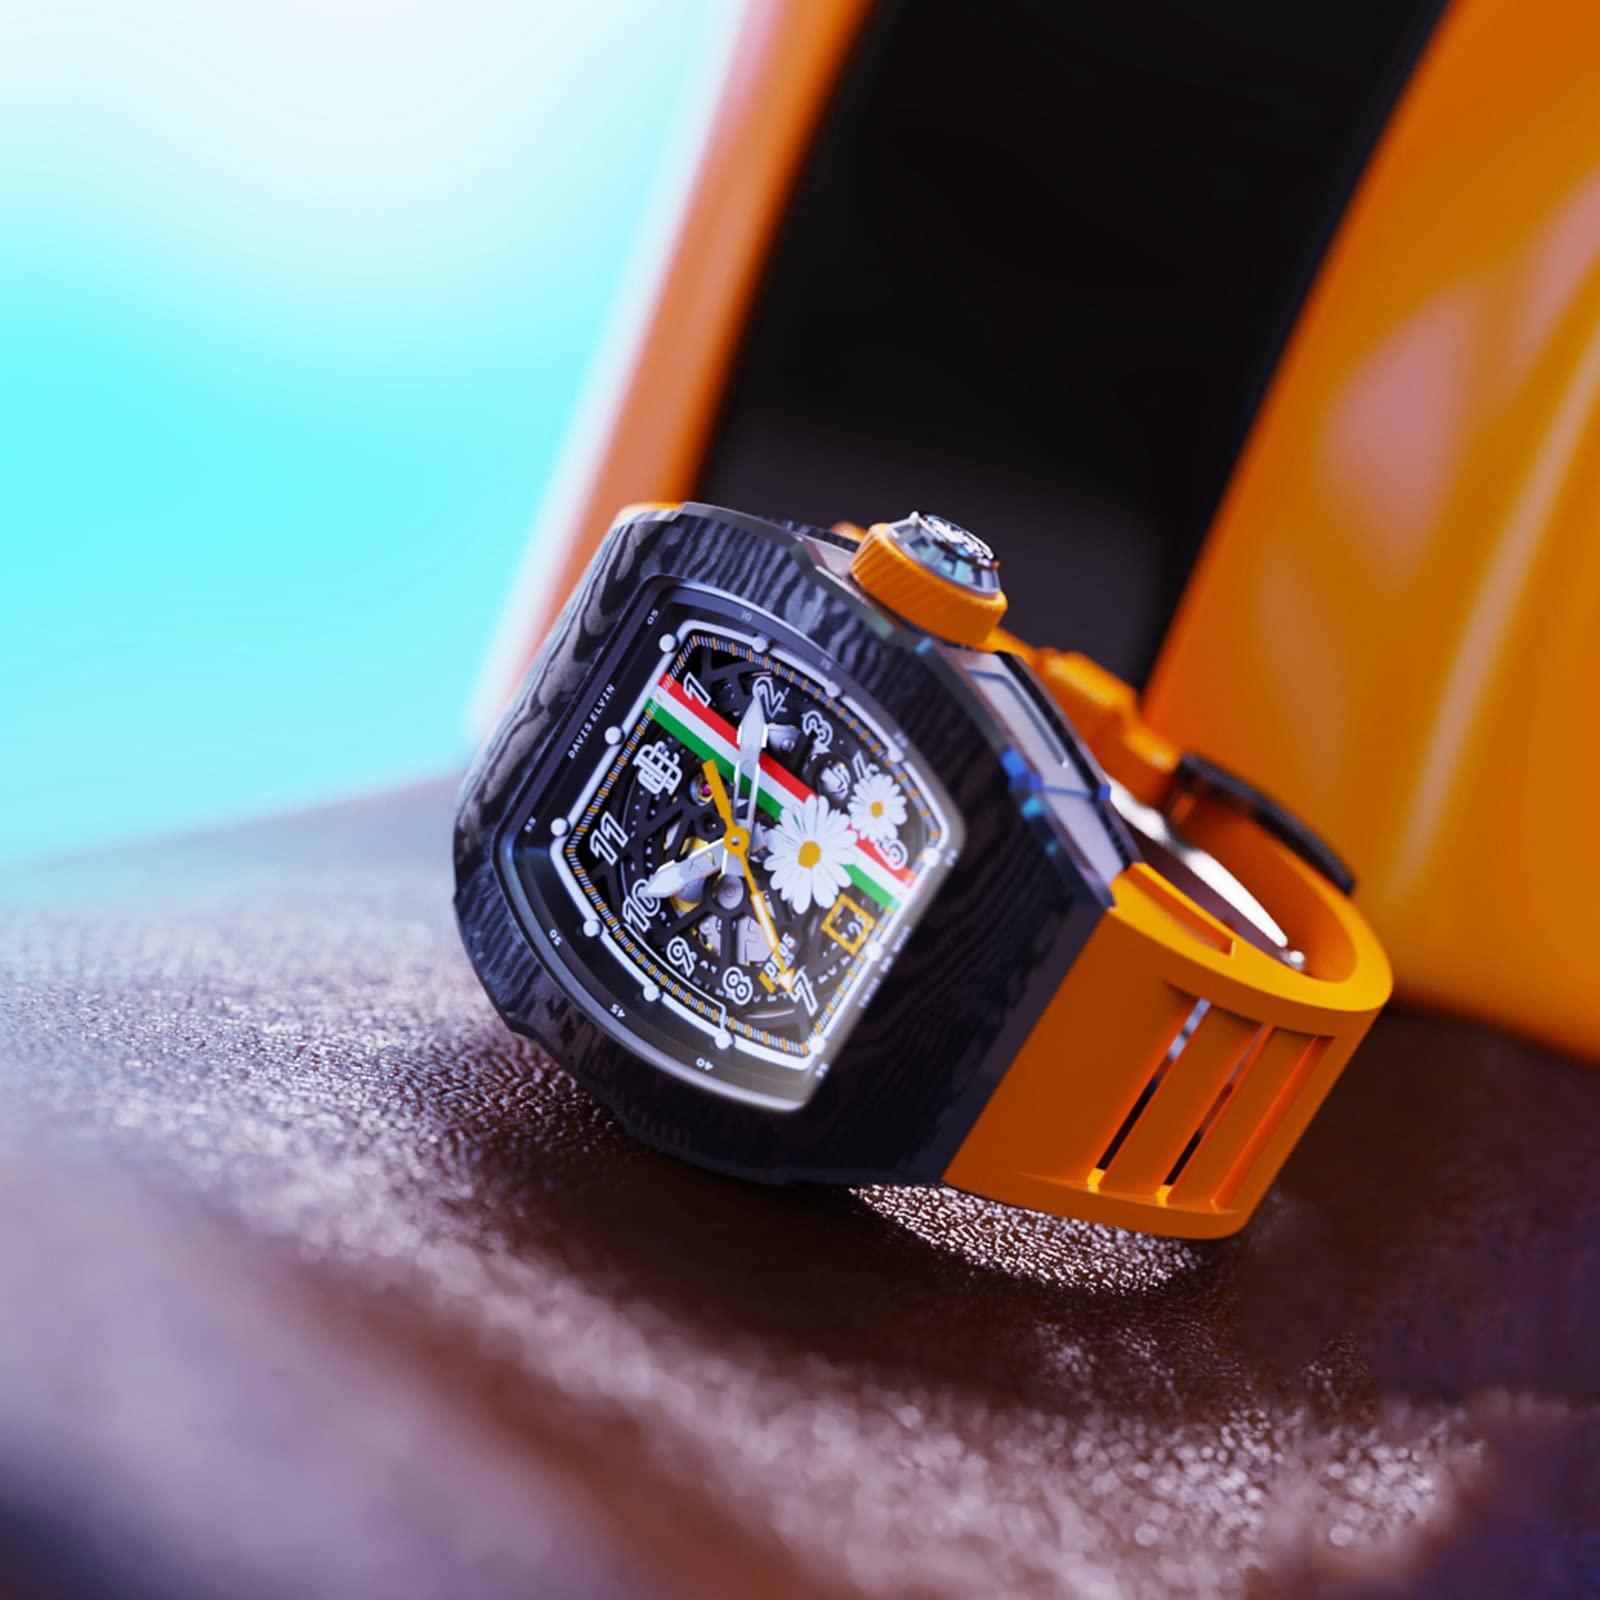 DAVIS ELVIN Carbon Fiber Gentleman Watch Birthday Gift Surprise for Men Tonneau Design Fashion Wrist Watch Swiss Automatic Movement Mechanical Watch Global Popular Original Men's Wristwatch-DR05-D